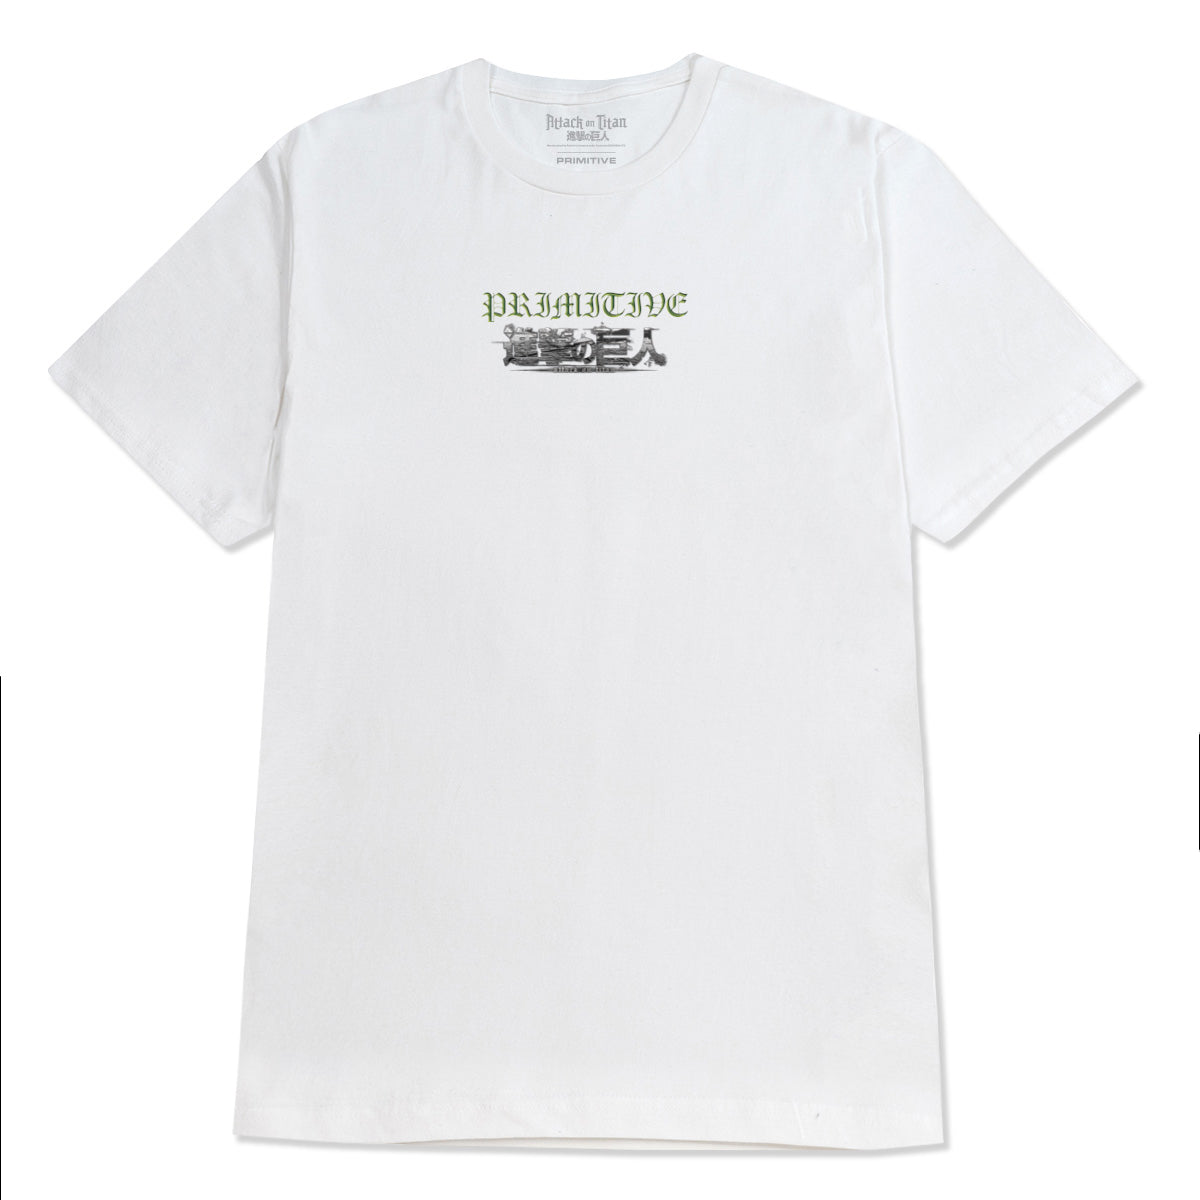 Primitive x Titans Scout T-Shirt - White image 2